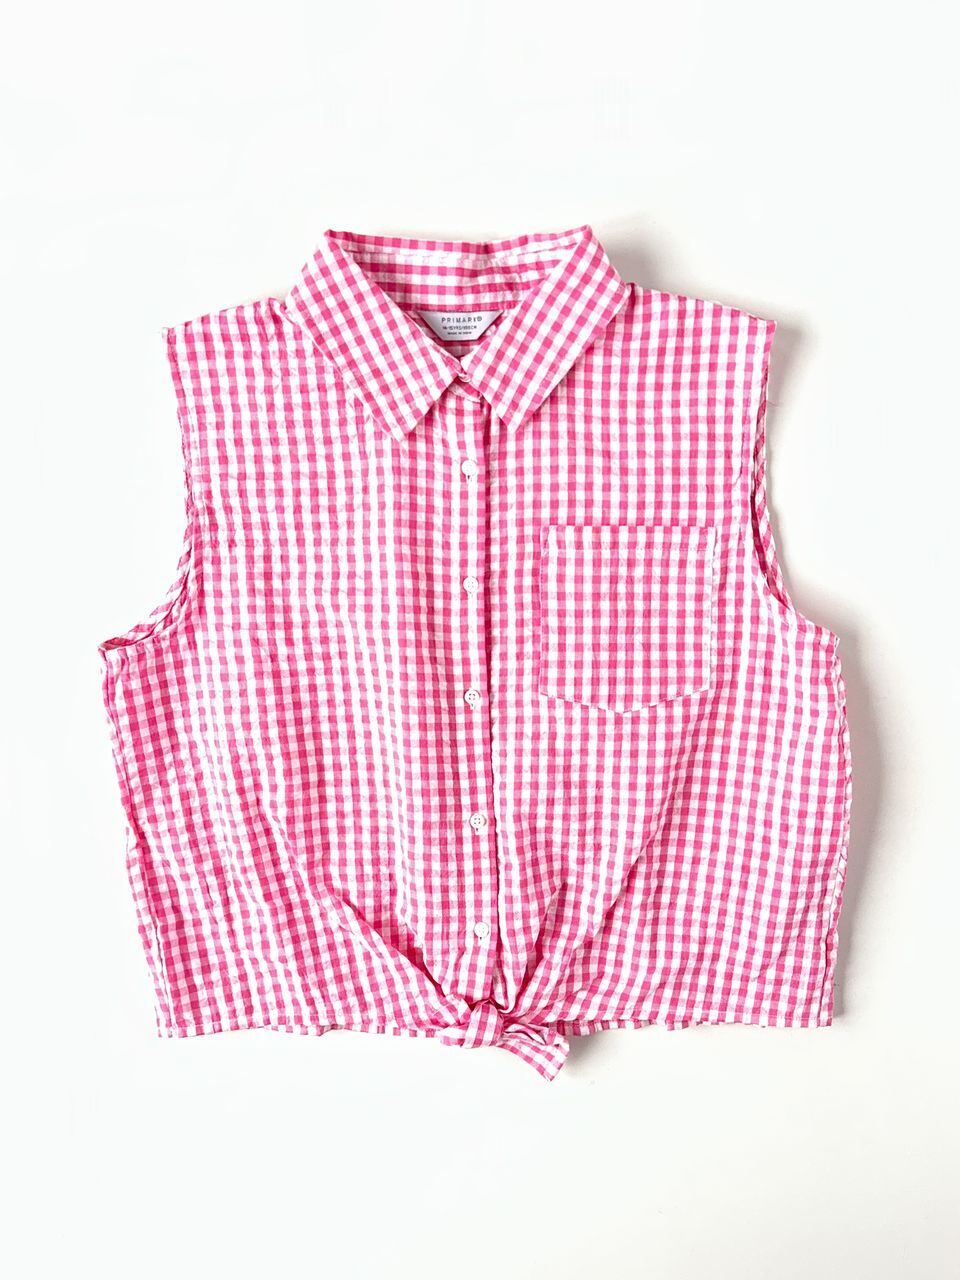 Рубашка хлопковая на пуговицах укороченная розовая в клетку на рост 166 см Primark